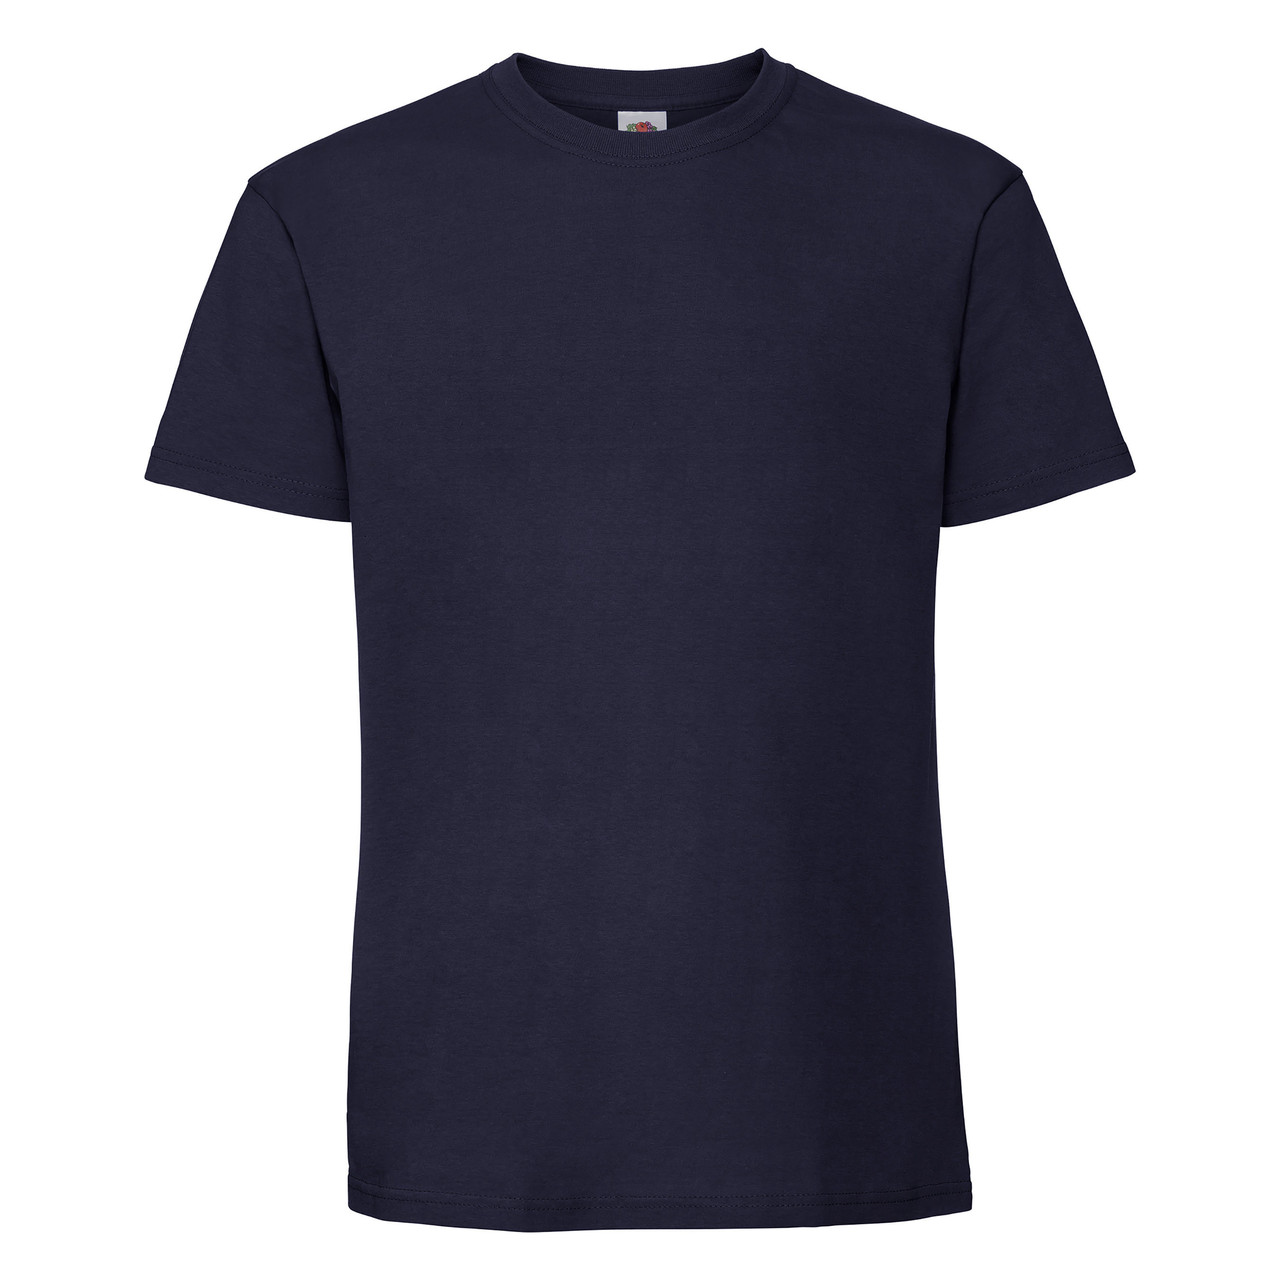 Чоловіча футболка щільна м'яка Темно-синя Fruit of the loom 61-422-32 M, фото 1